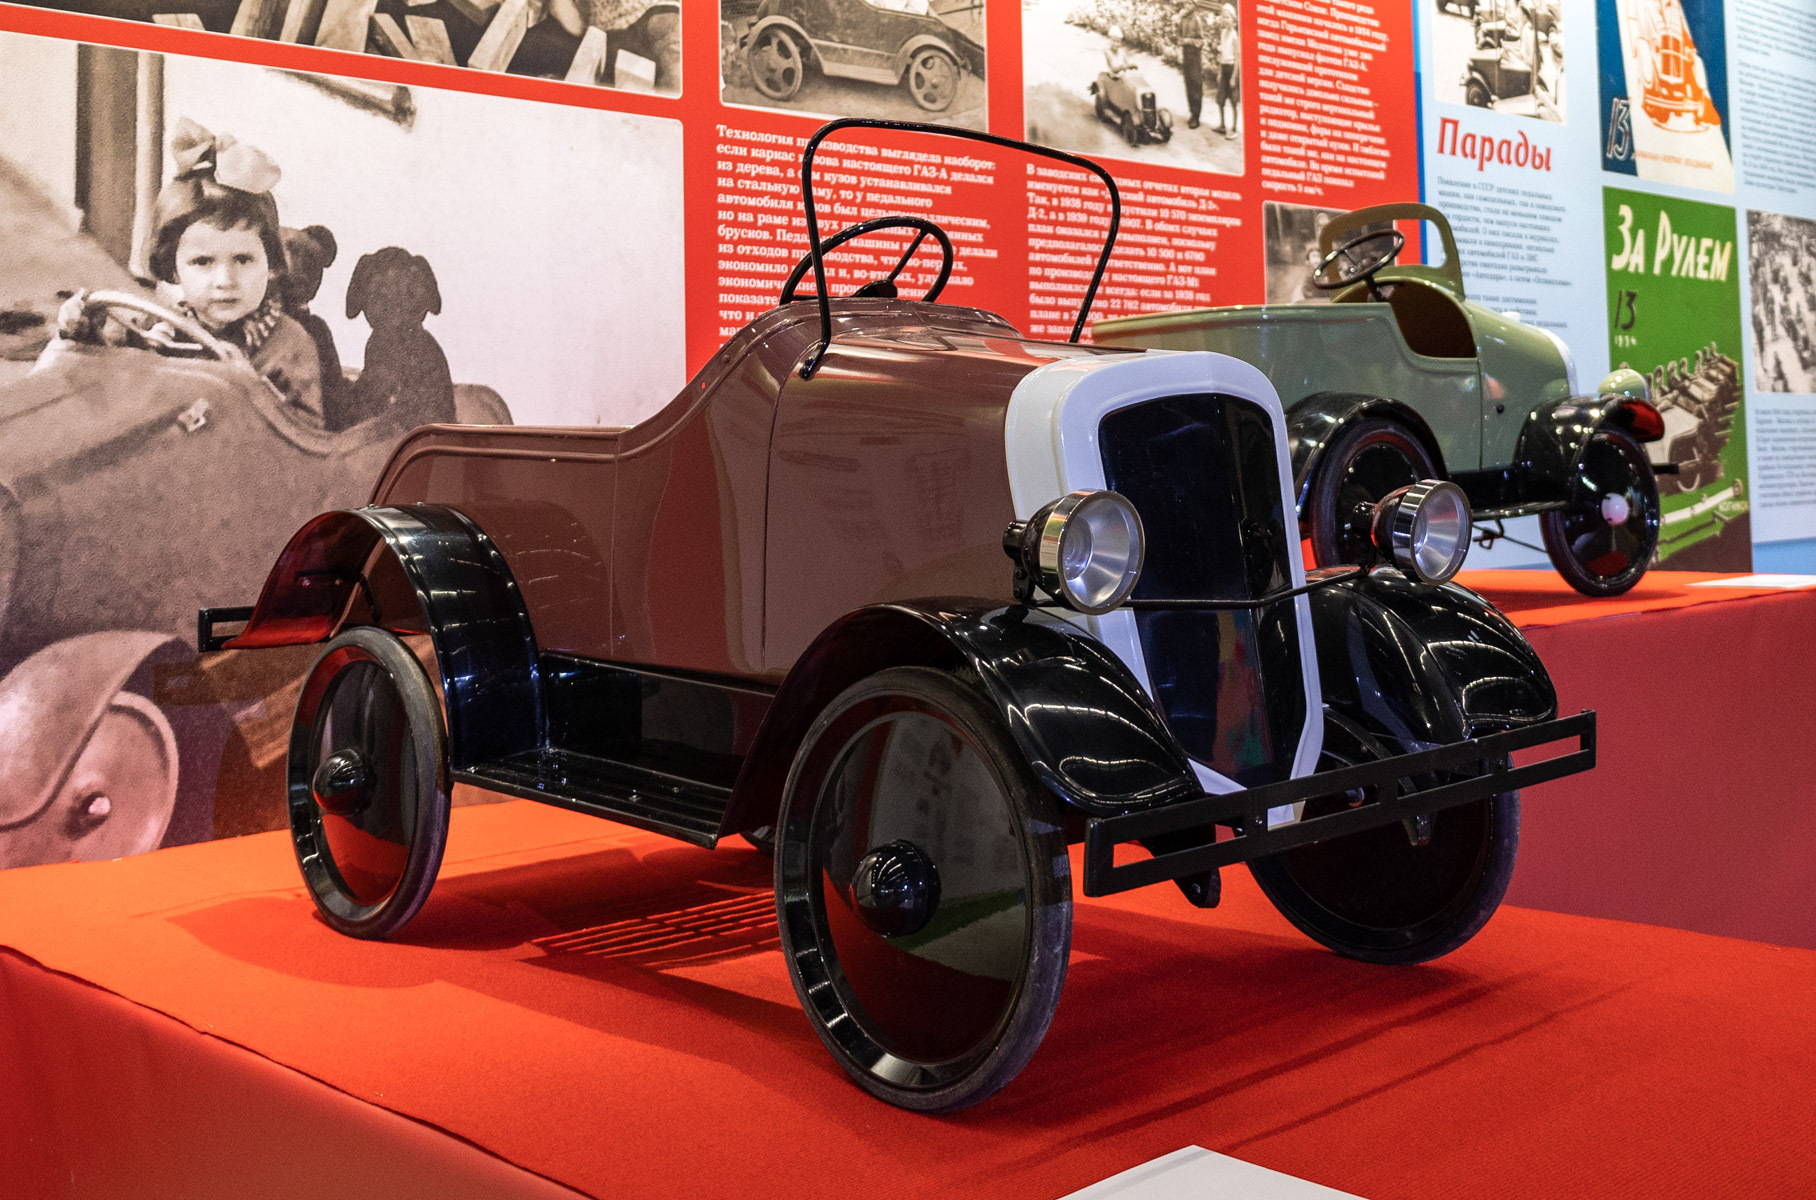 Вторая модель педального автомобиля появилась в 1936 году. Она напоминала [ГАЗ-М1](https://motor.ru/stories/gazm1.htm). В принципе, машинка осталась прежней, сменив лишь «облицовку радиатора» на наклонную и V-образную. Модель называлась «Детский автомобиль Д-2».